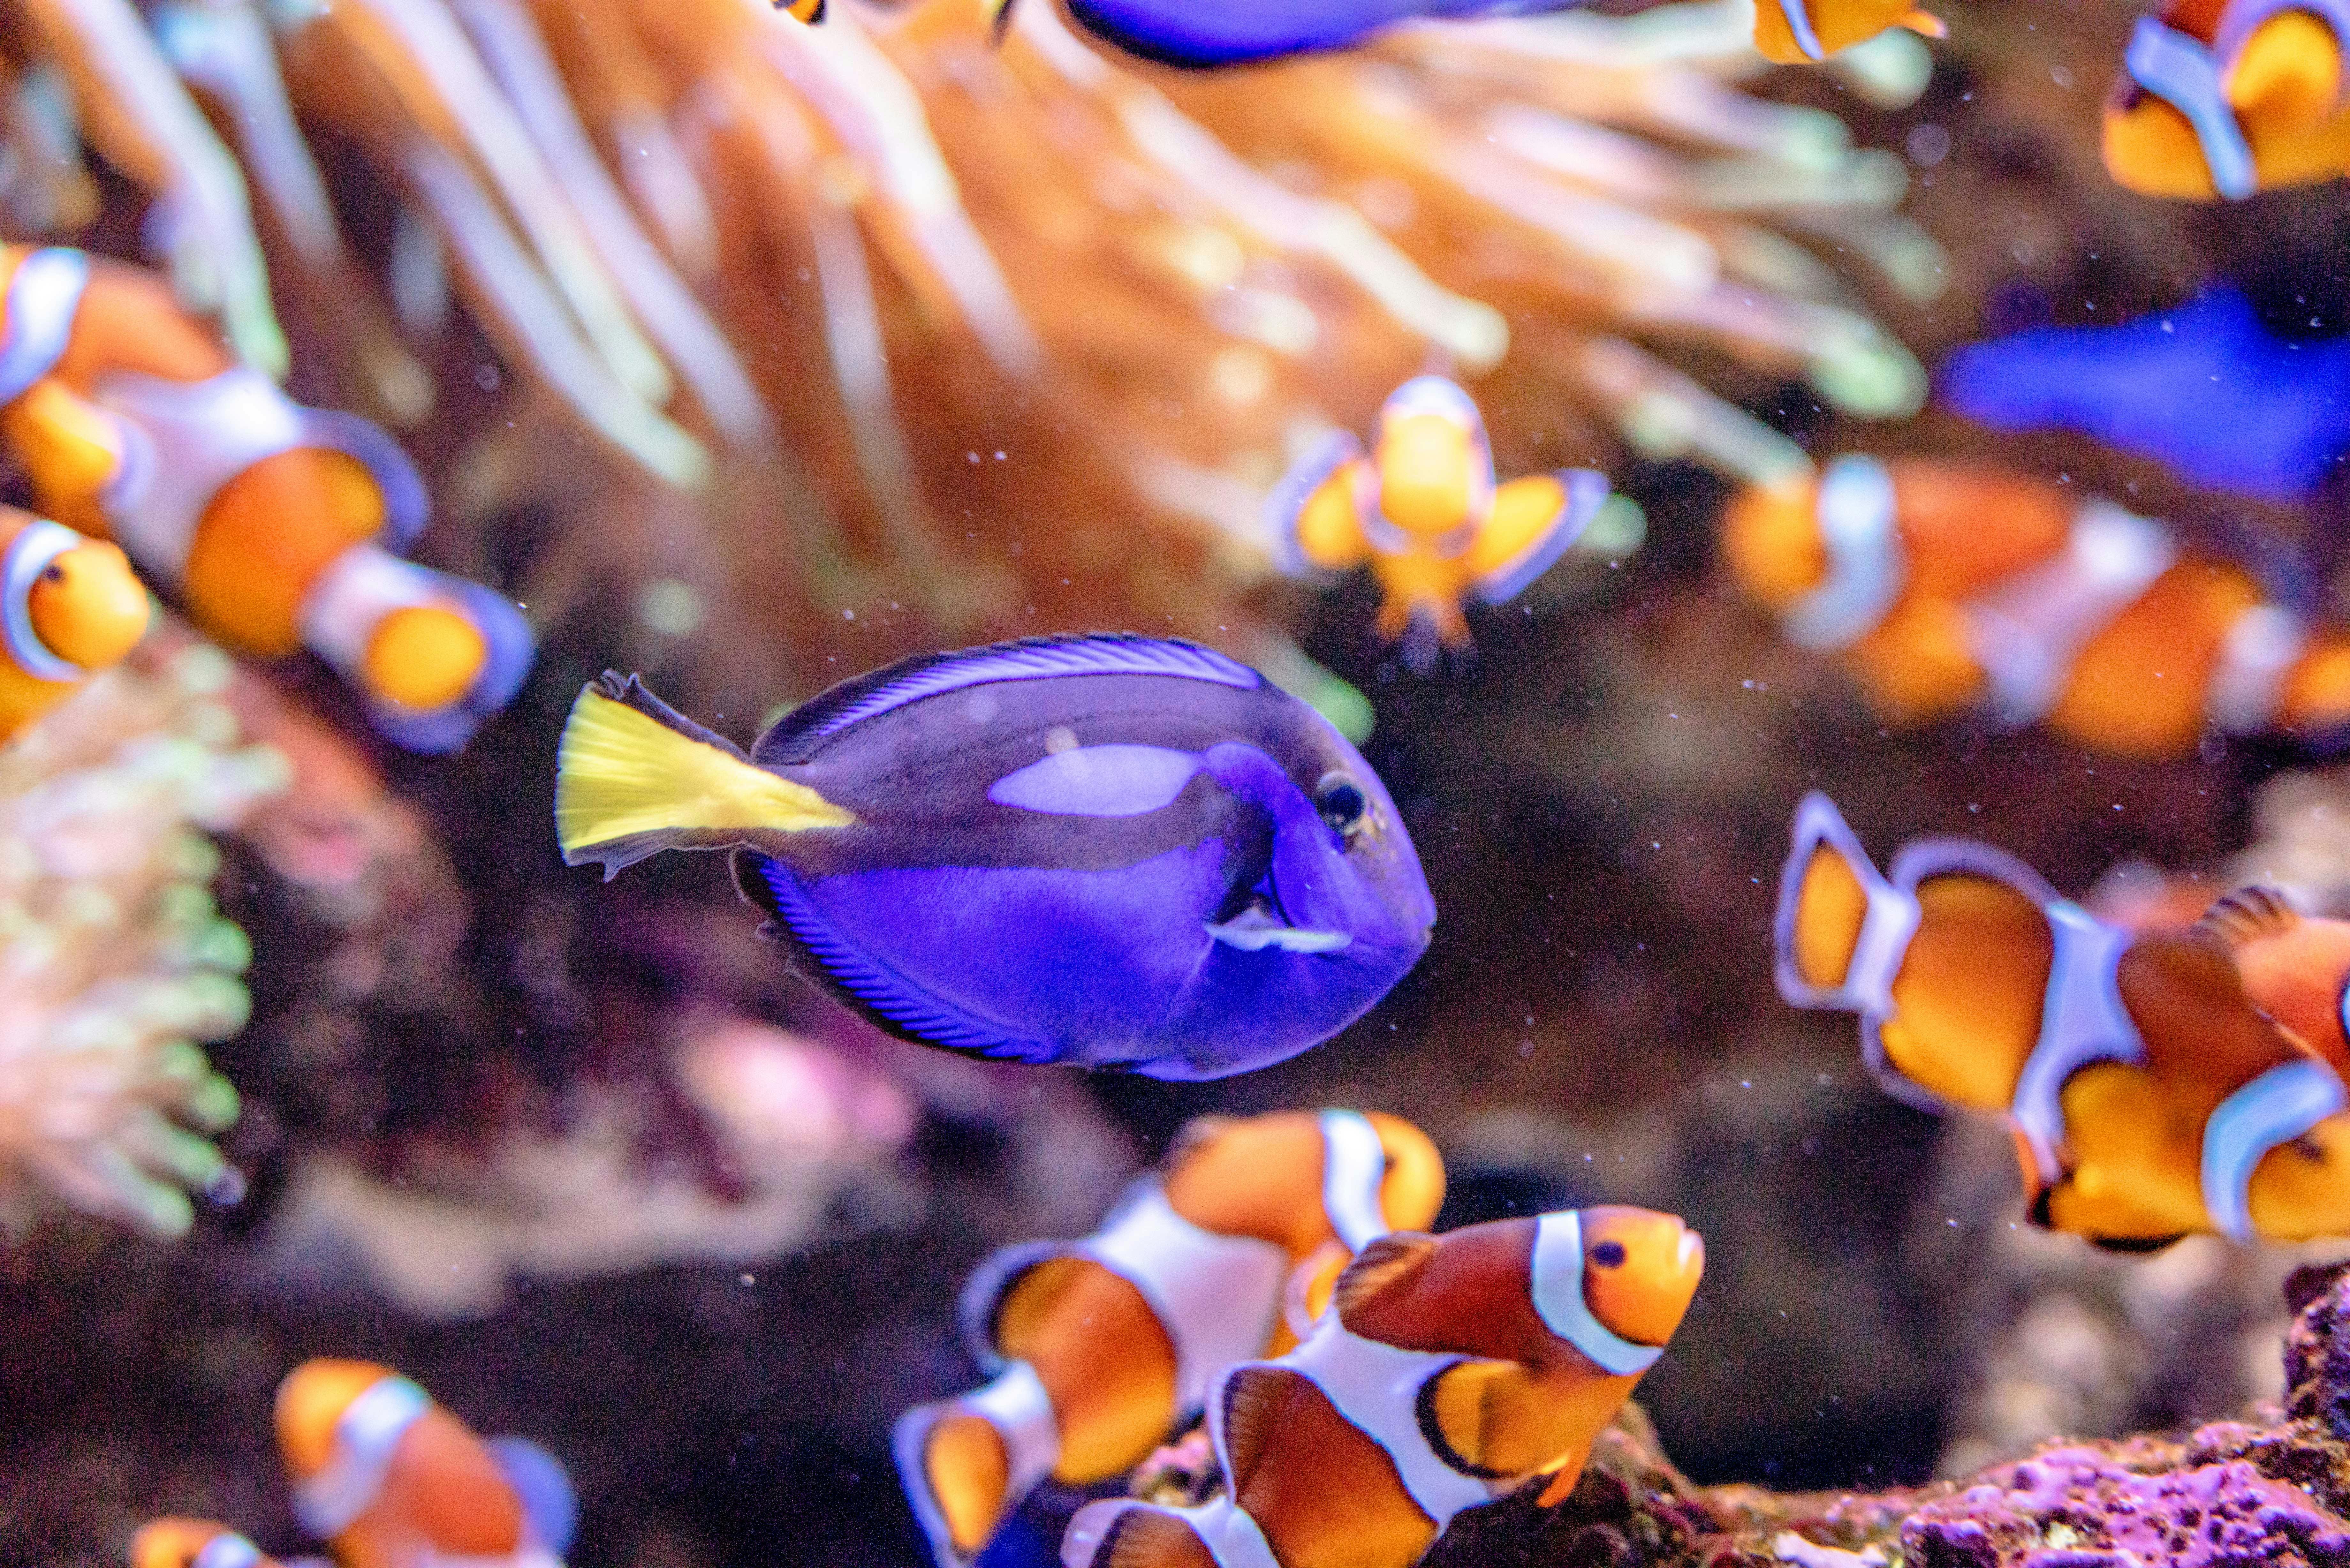 blue tang fish and clown fish